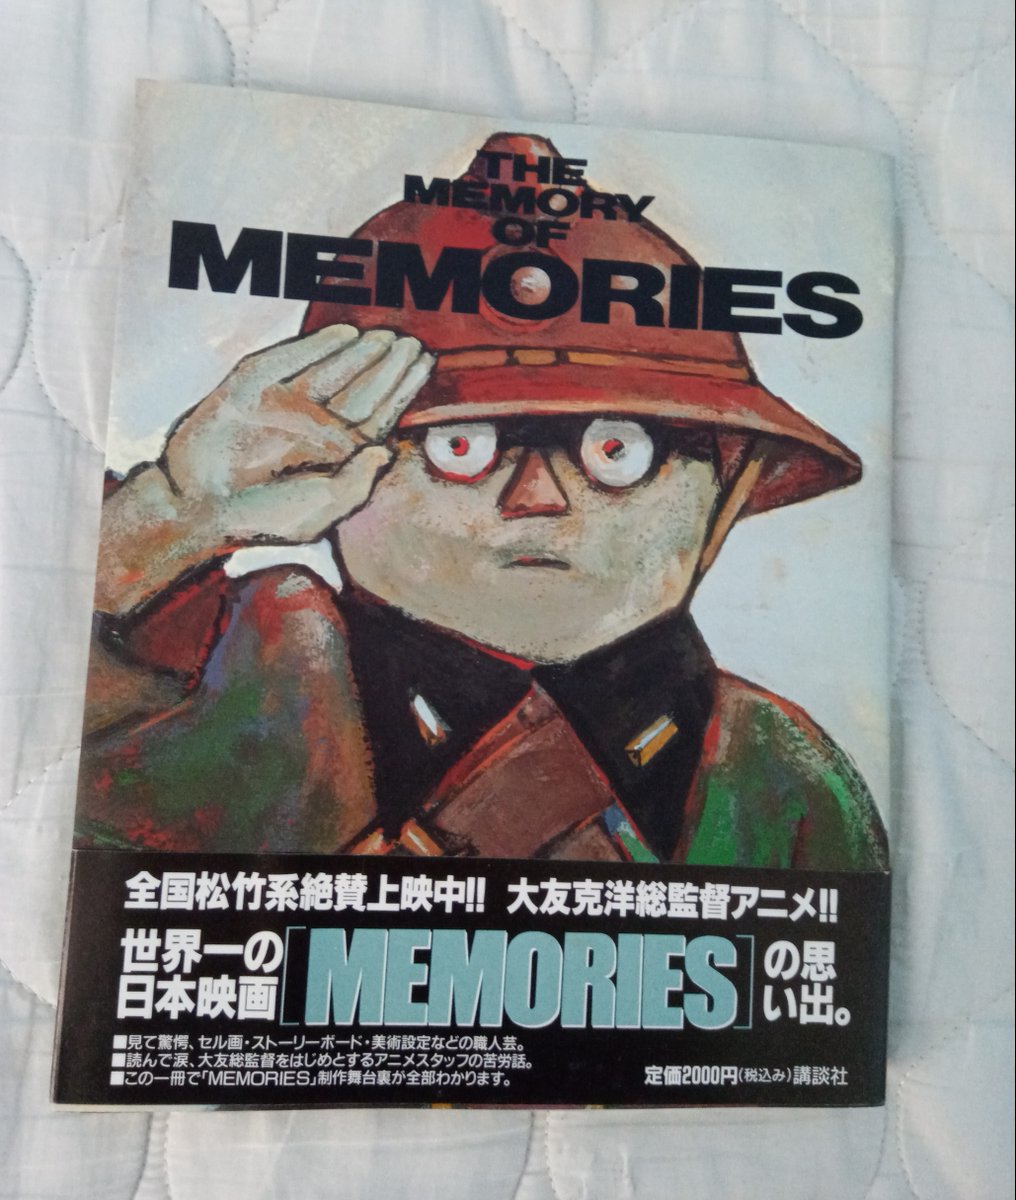 Me compré el artbook "The Memory of Memories".

Todos los Design Works e Image Boards de Magnetic Rose (彼女の想いで) son geniales.

La segunda imagen es trabajo de Mitsuo Iso (磯光雄)
La tercera imagen es de Toshiyuki Inoue (井上俊之)
Los Background Designs no sé quien los hizo 